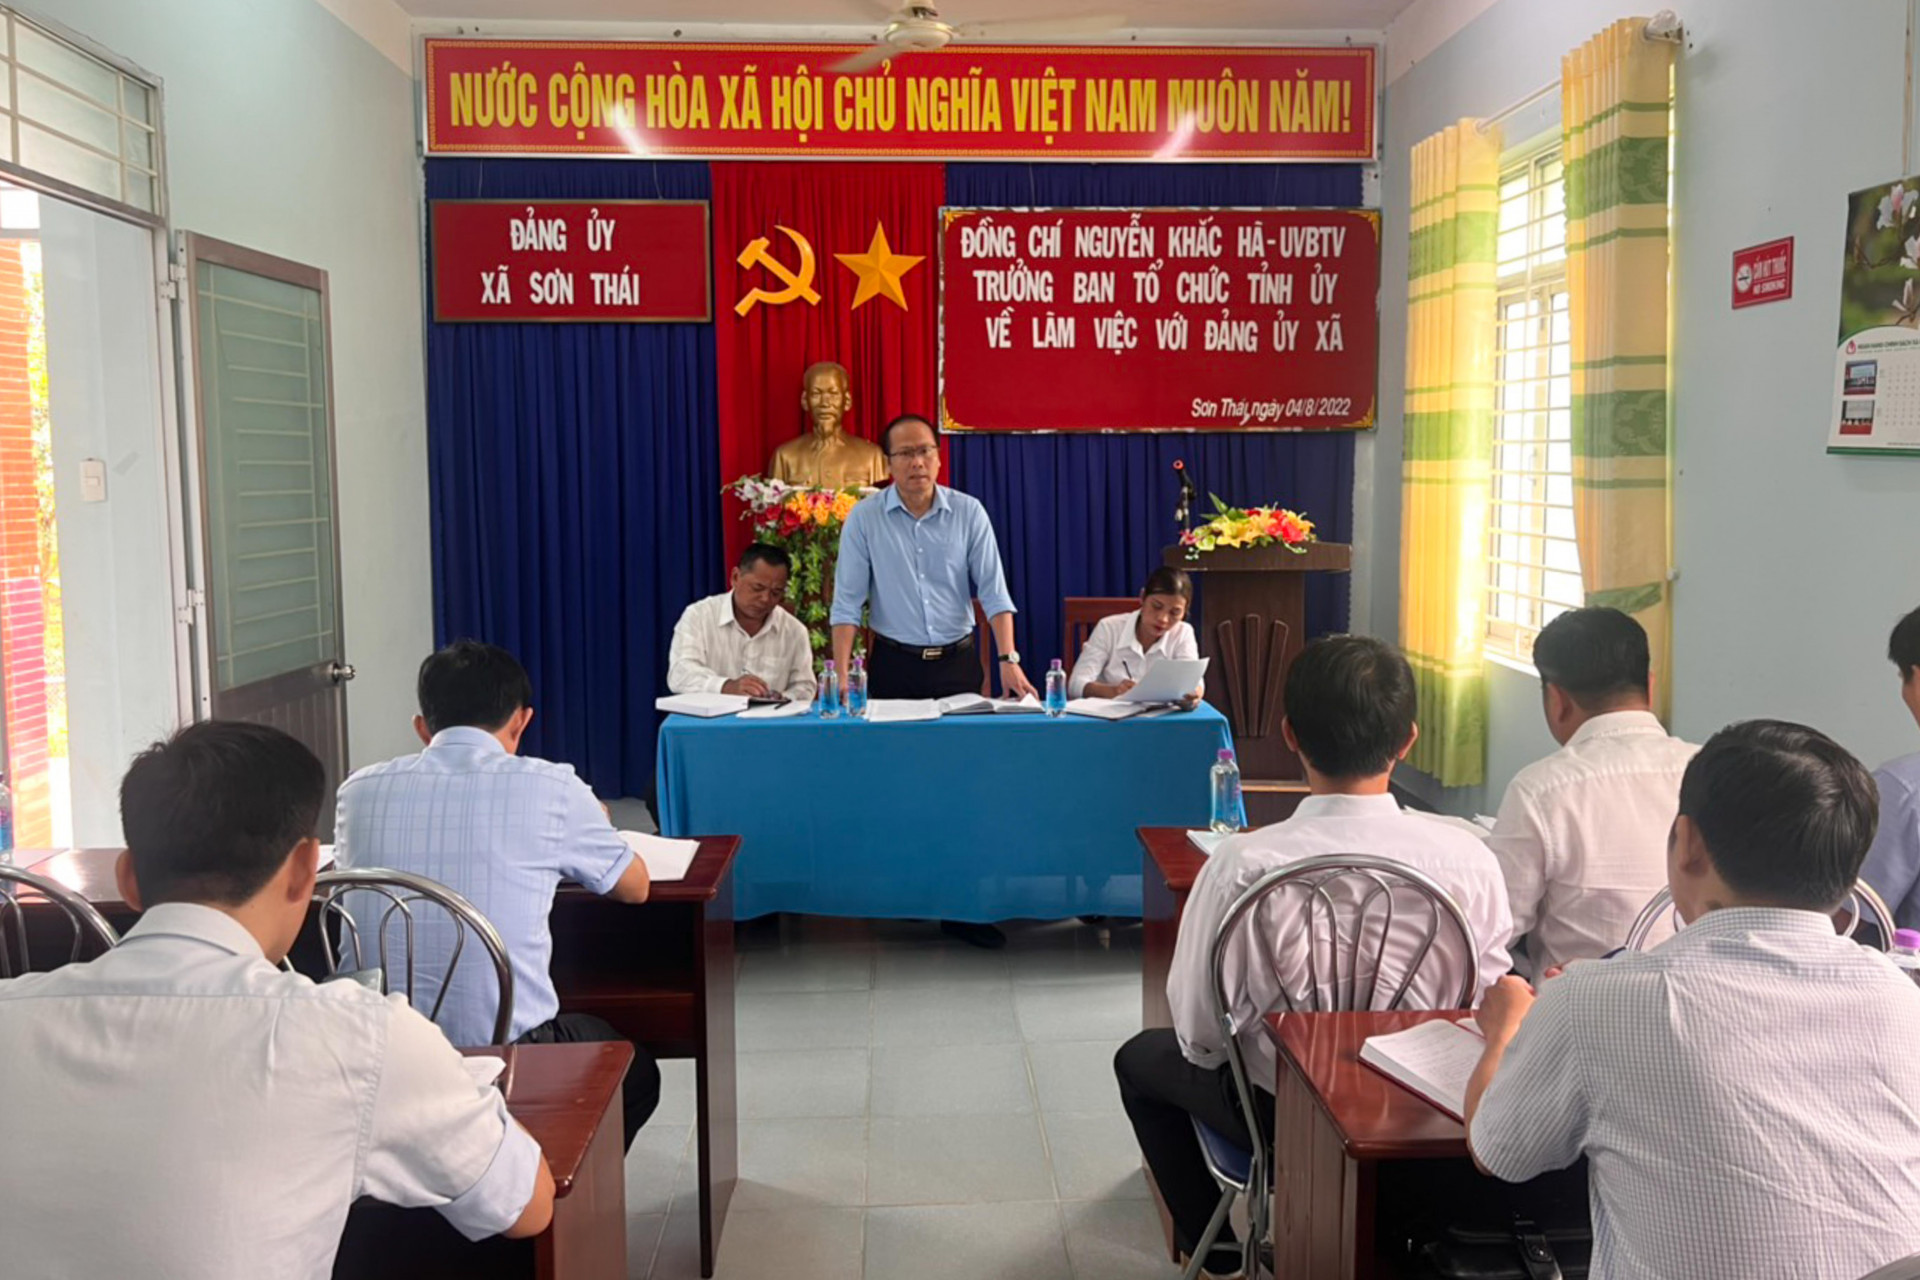 Đồng chí Nguyễn Khắc Hà chỉ đạo tại buổi làm việc